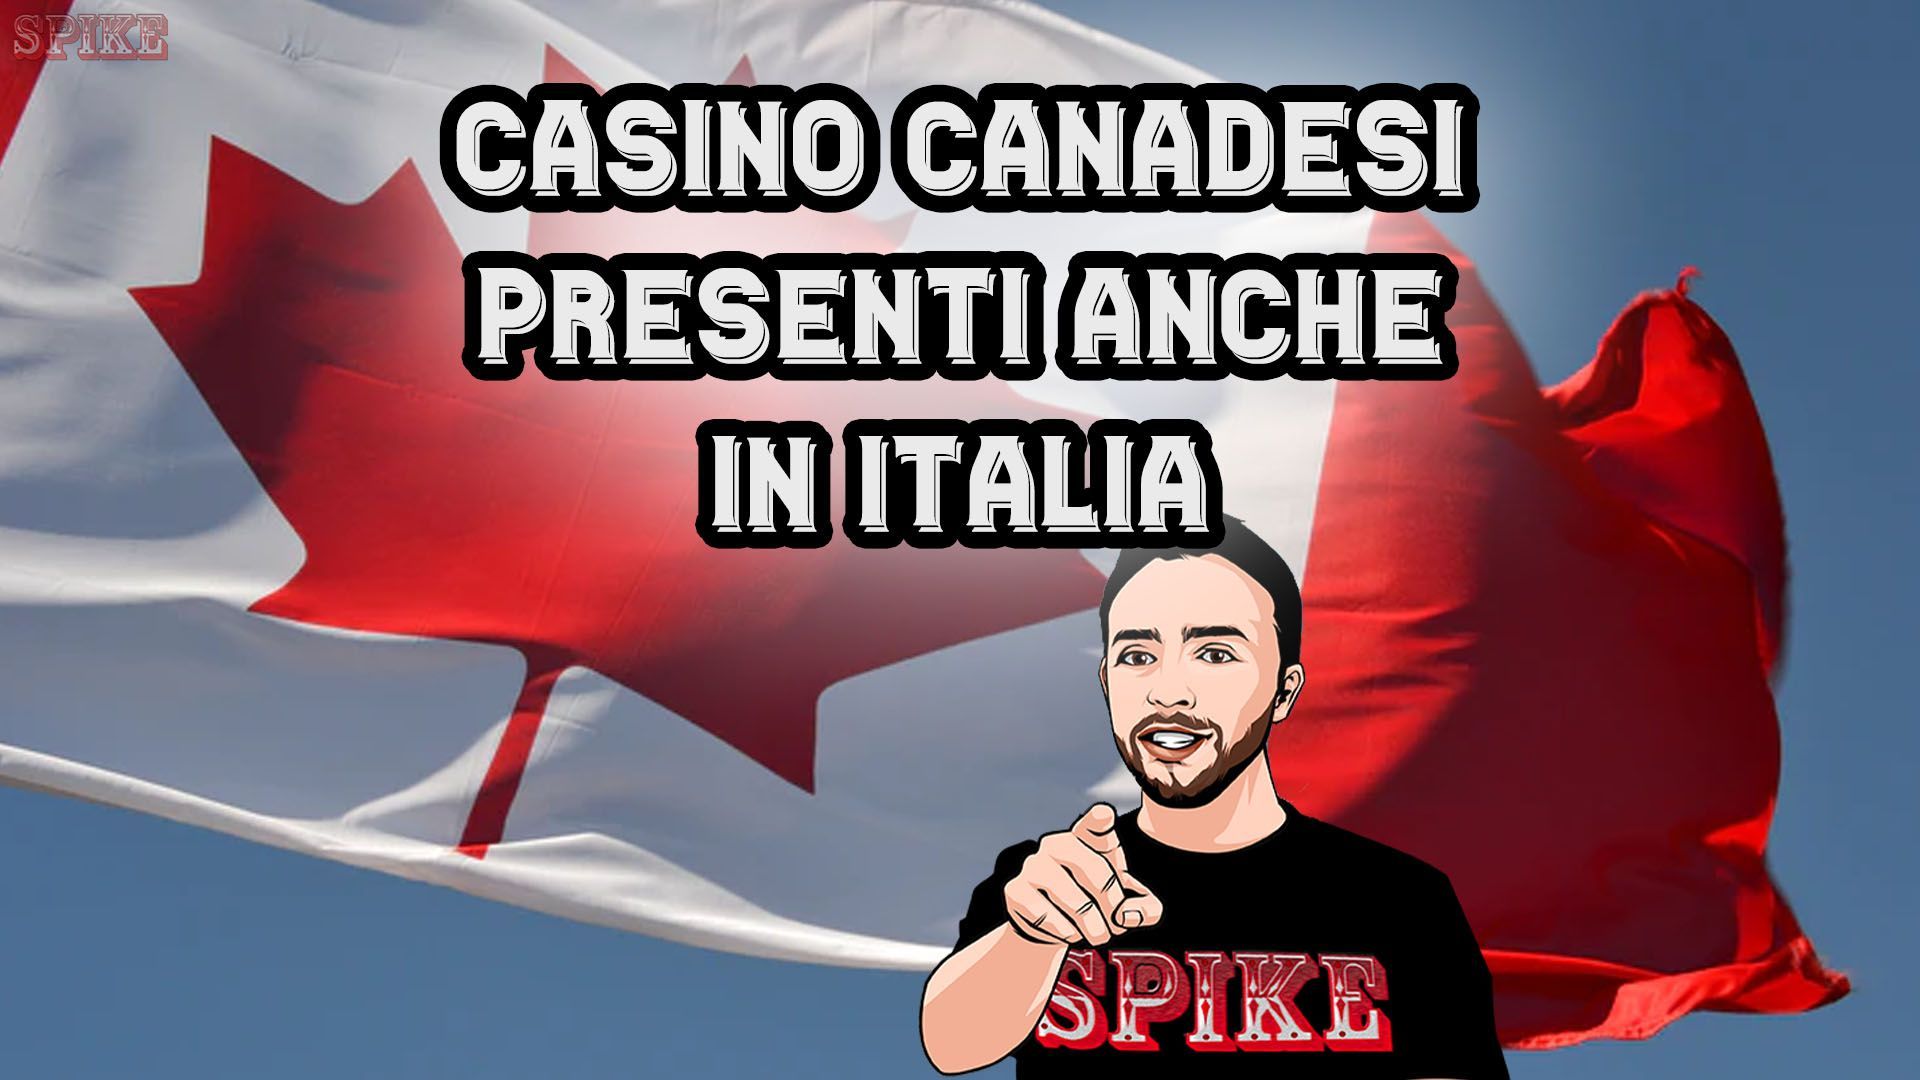 Casino Canada